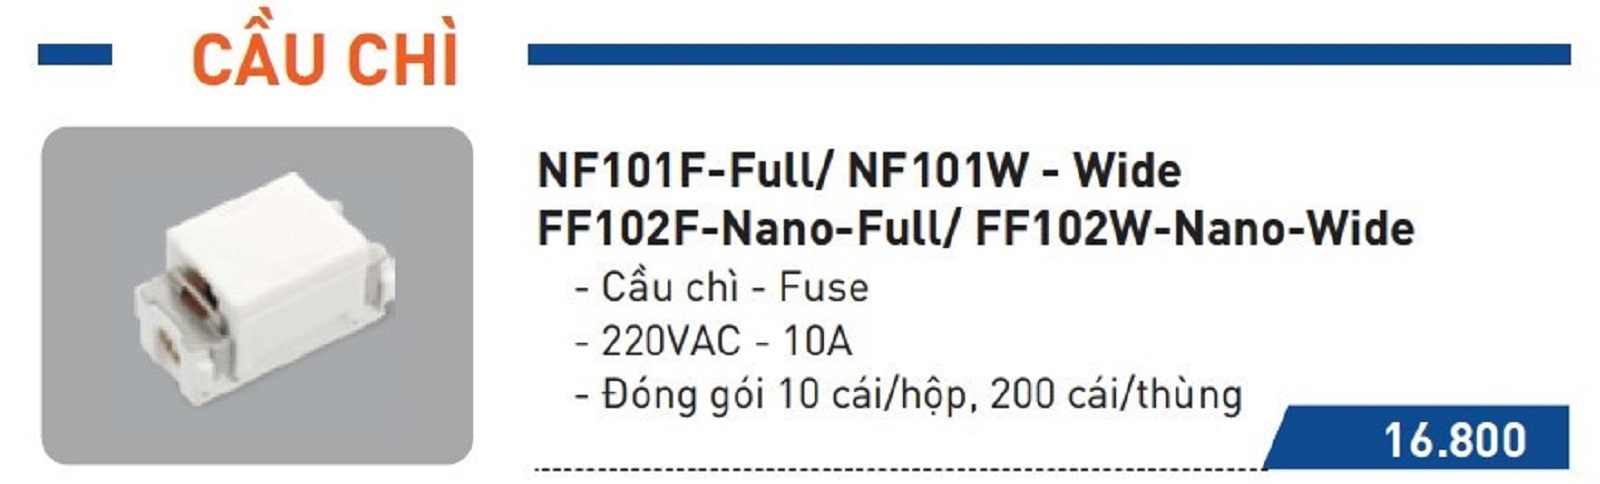 Catalogue cầu chì Nanoco